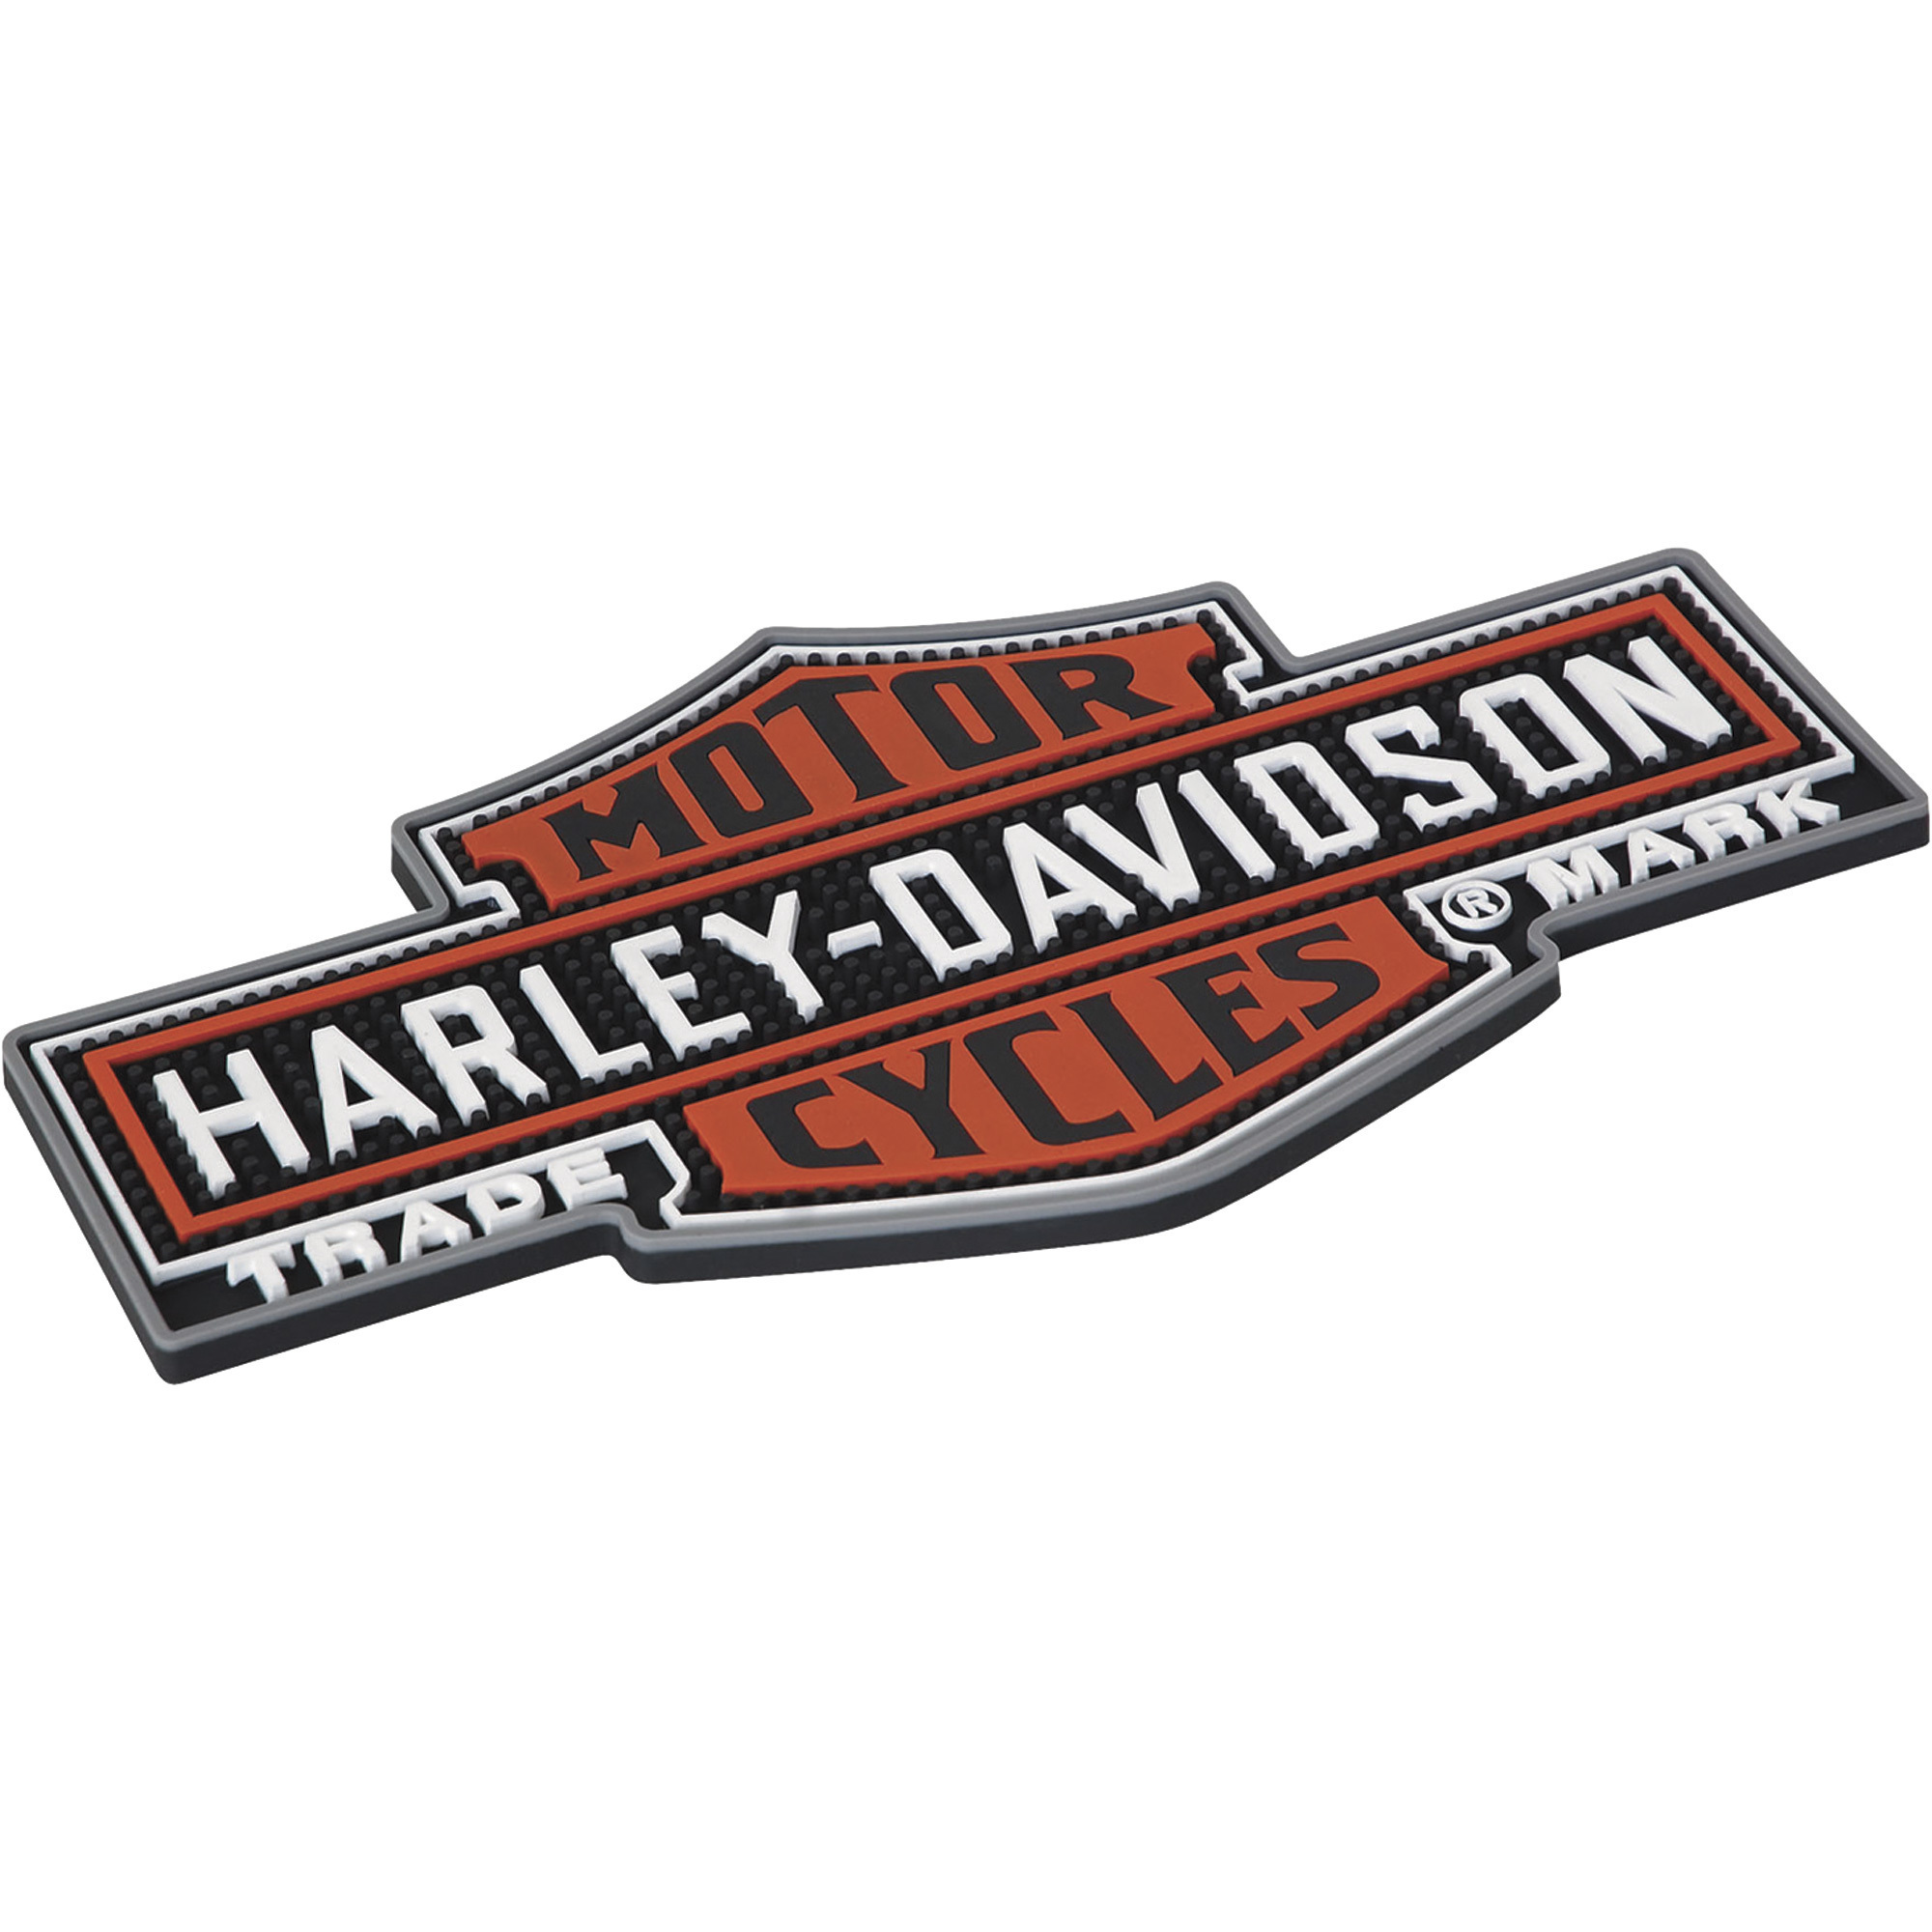 Harley-Davidson HDL-18510